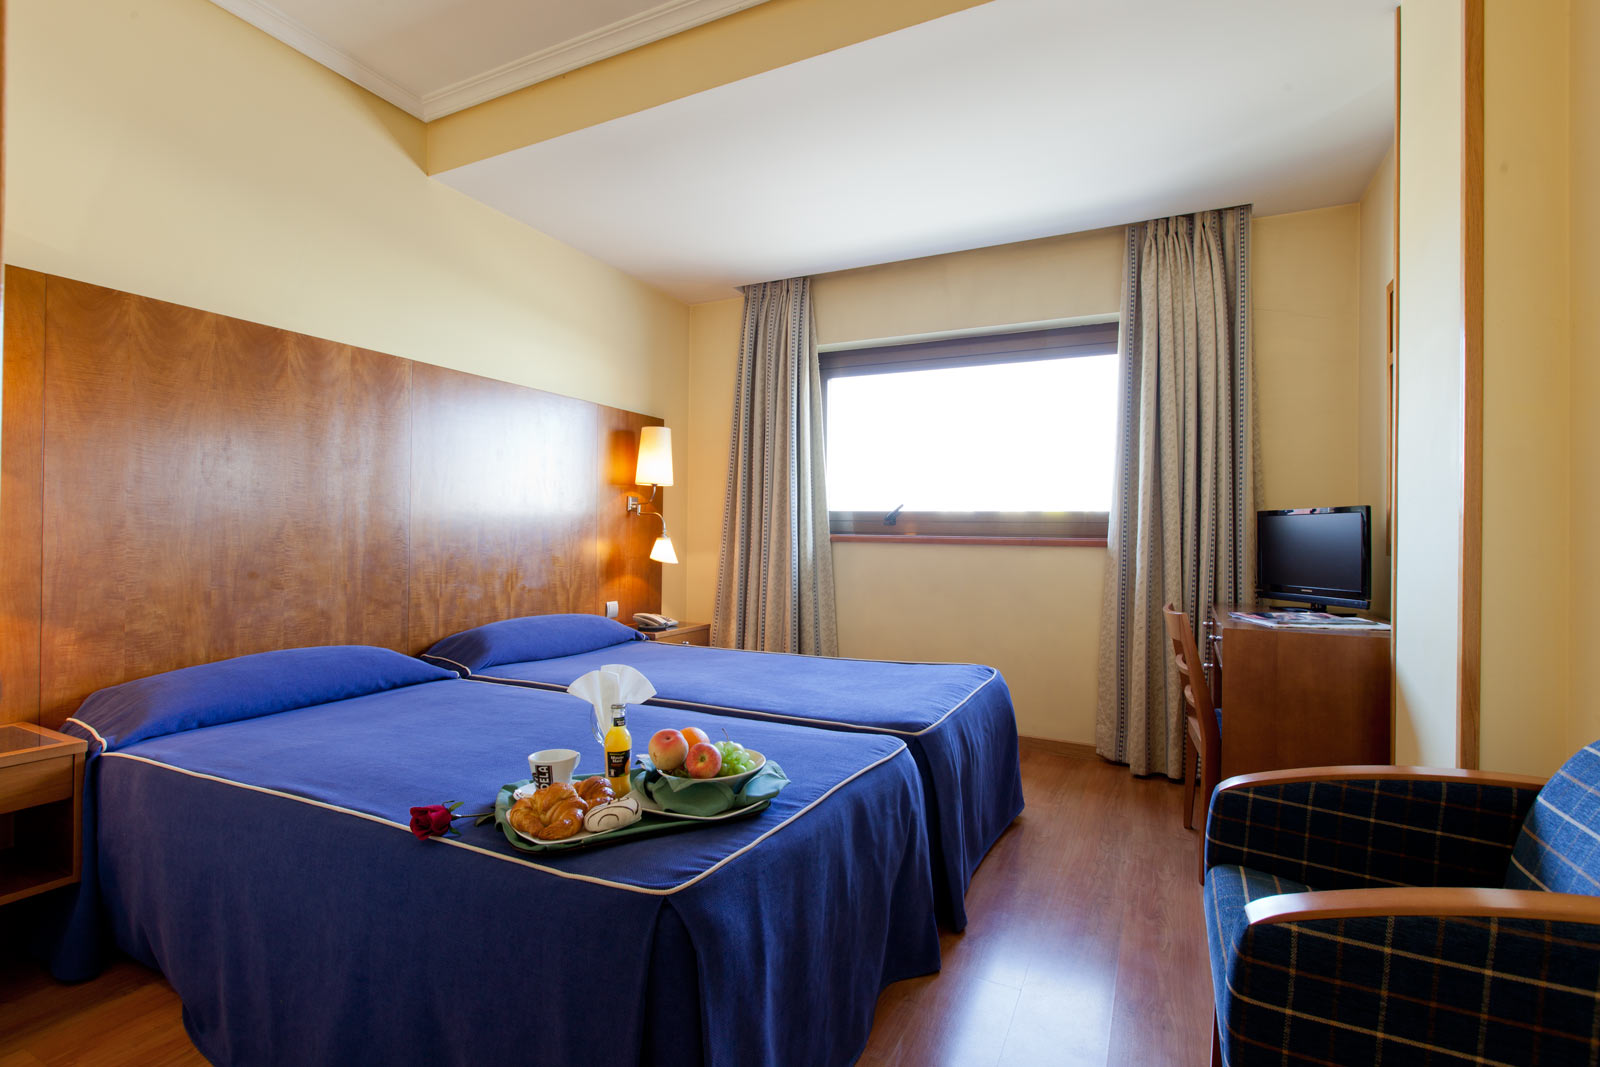 Hotel Galaico | Rooms